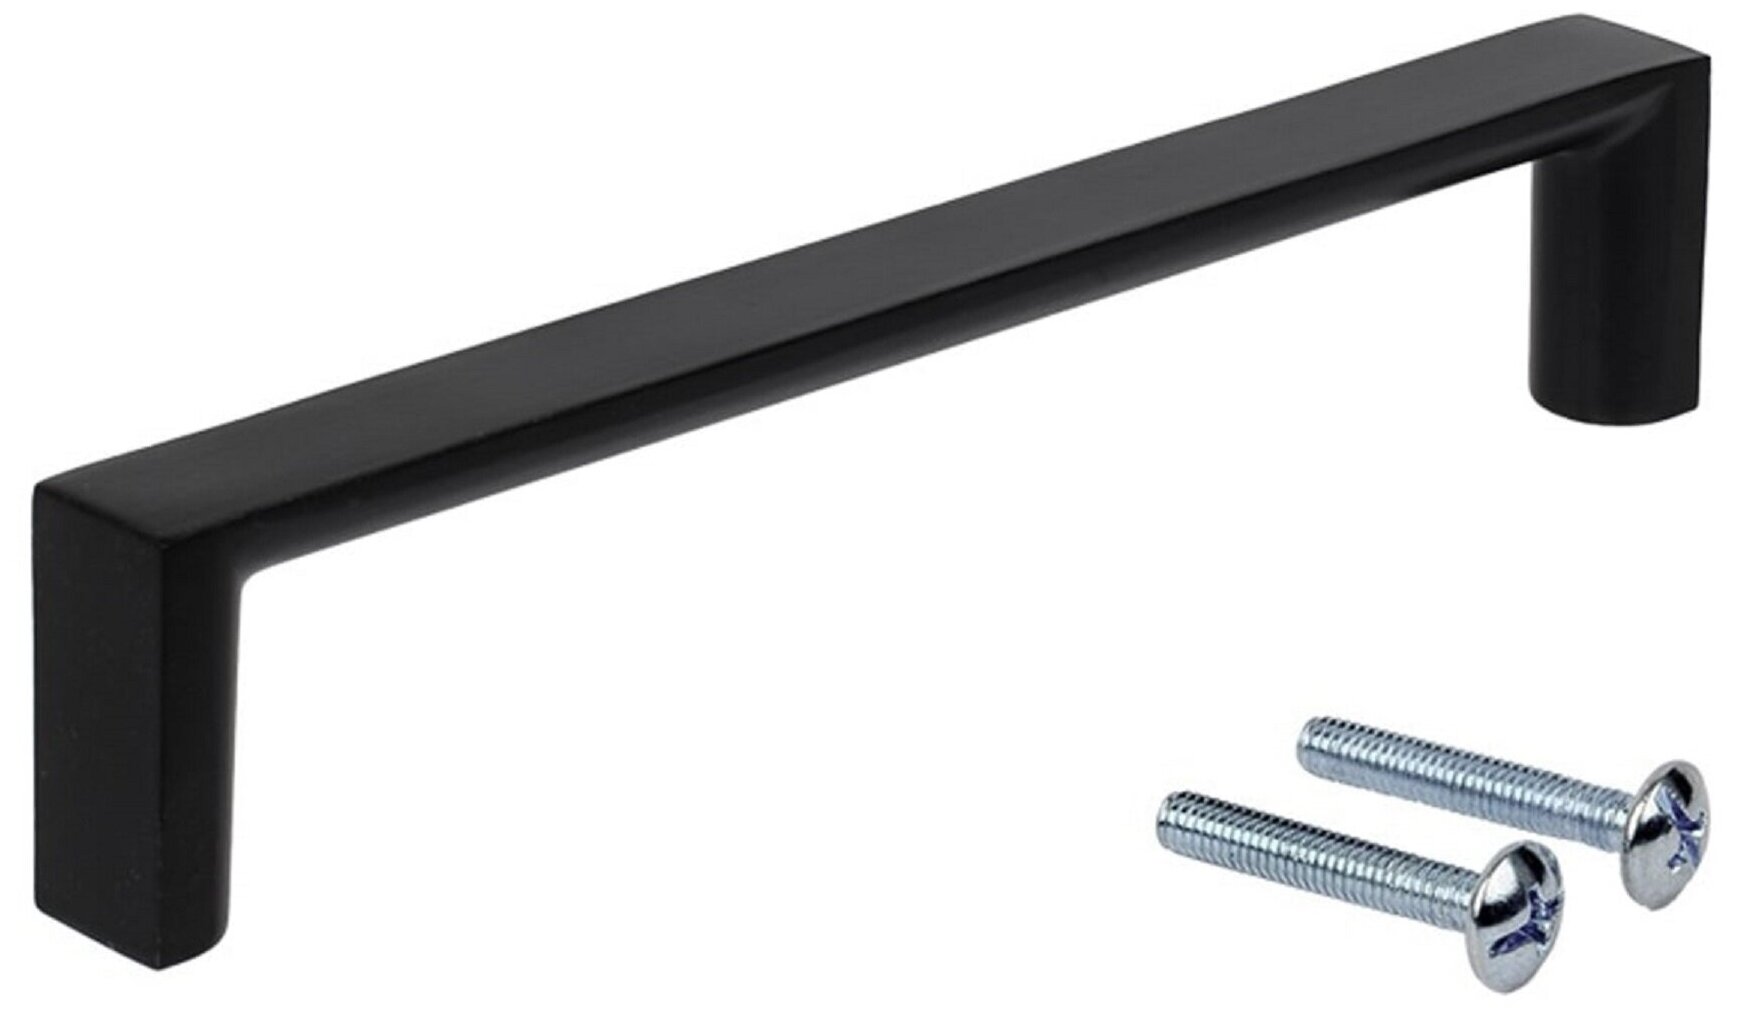 Ручка-скоба алюминиевая 128 мм цвет матовый черный прочная удобная ручка для фасадов и ящиков корпусной мебели гостиной спальни кабинета офиса и